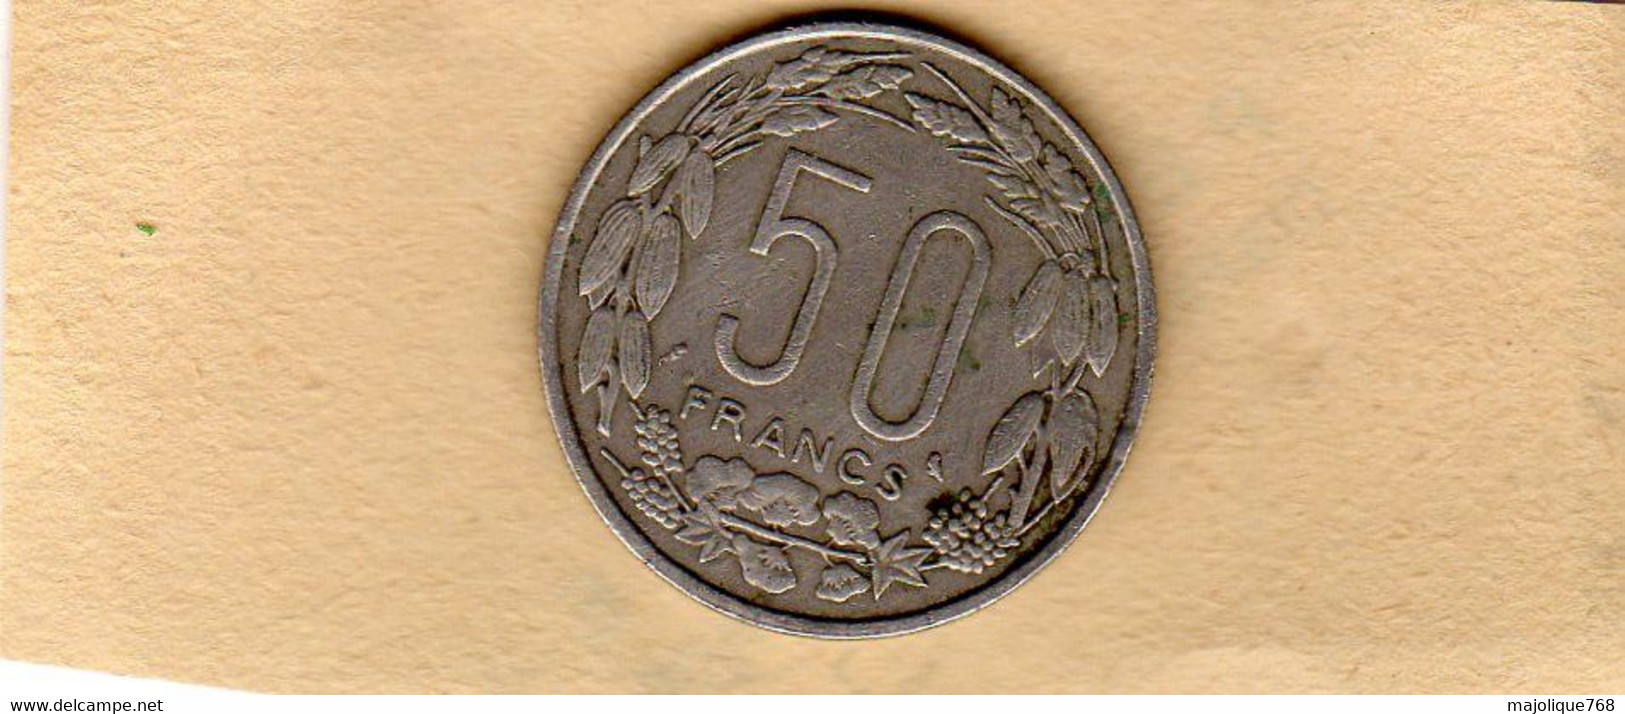 Piéce 50 Francs Republique Centrafricaine-Congo-Gabon-Tchad-1963 En TTB En Nickel - Centraal-Afrikaanse Republiek